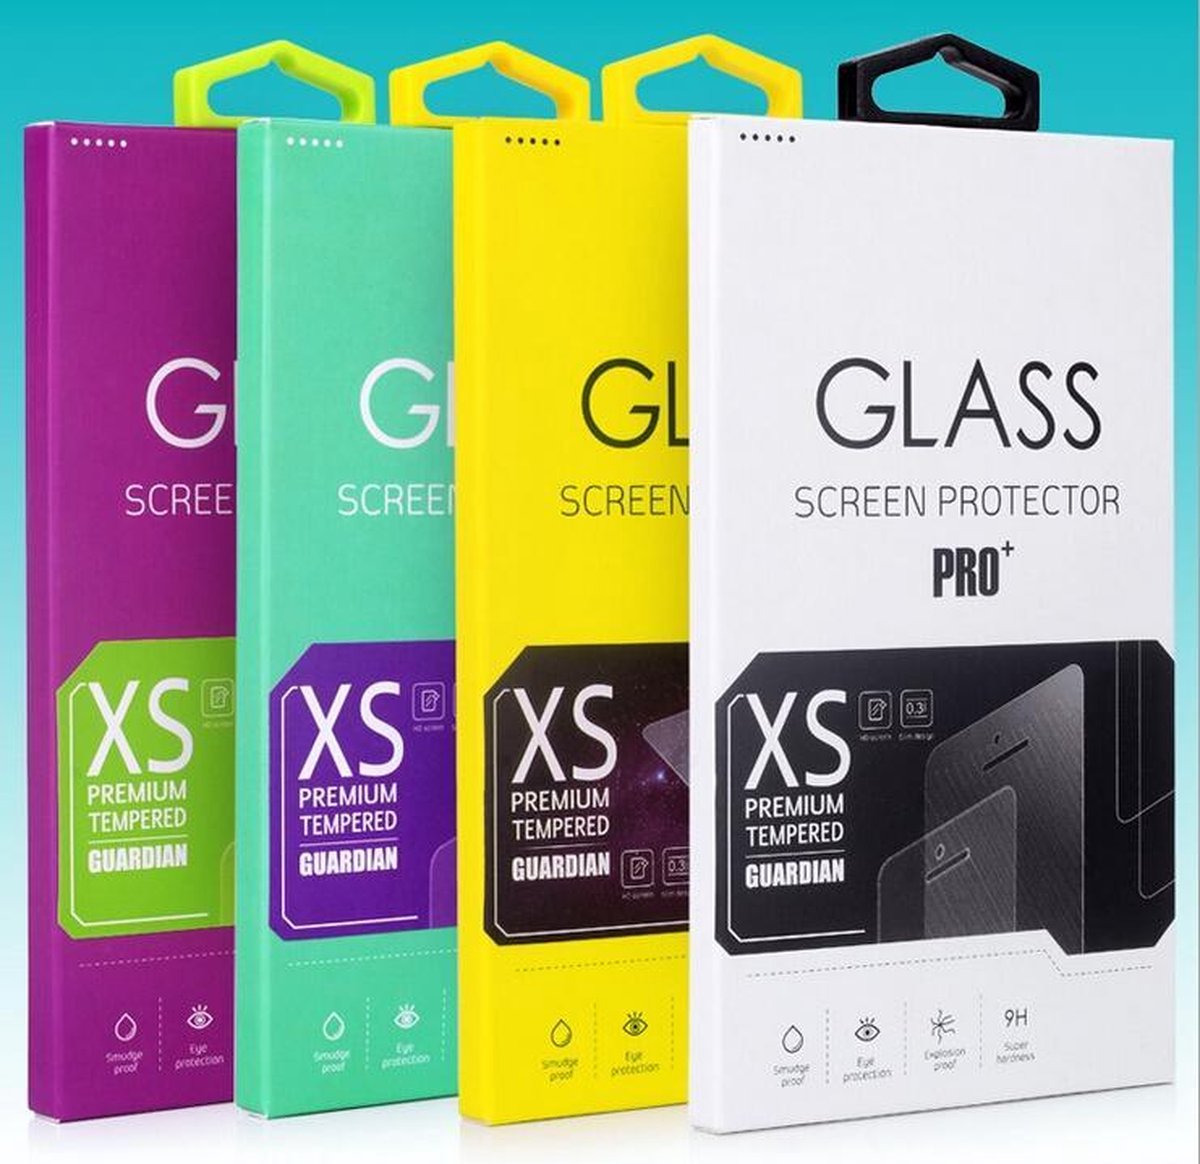 Huawei P9 Lite - Display Tempered Glass Screenprotector - Krasbestendige Glazen Screen Protector - Merk GSMWise